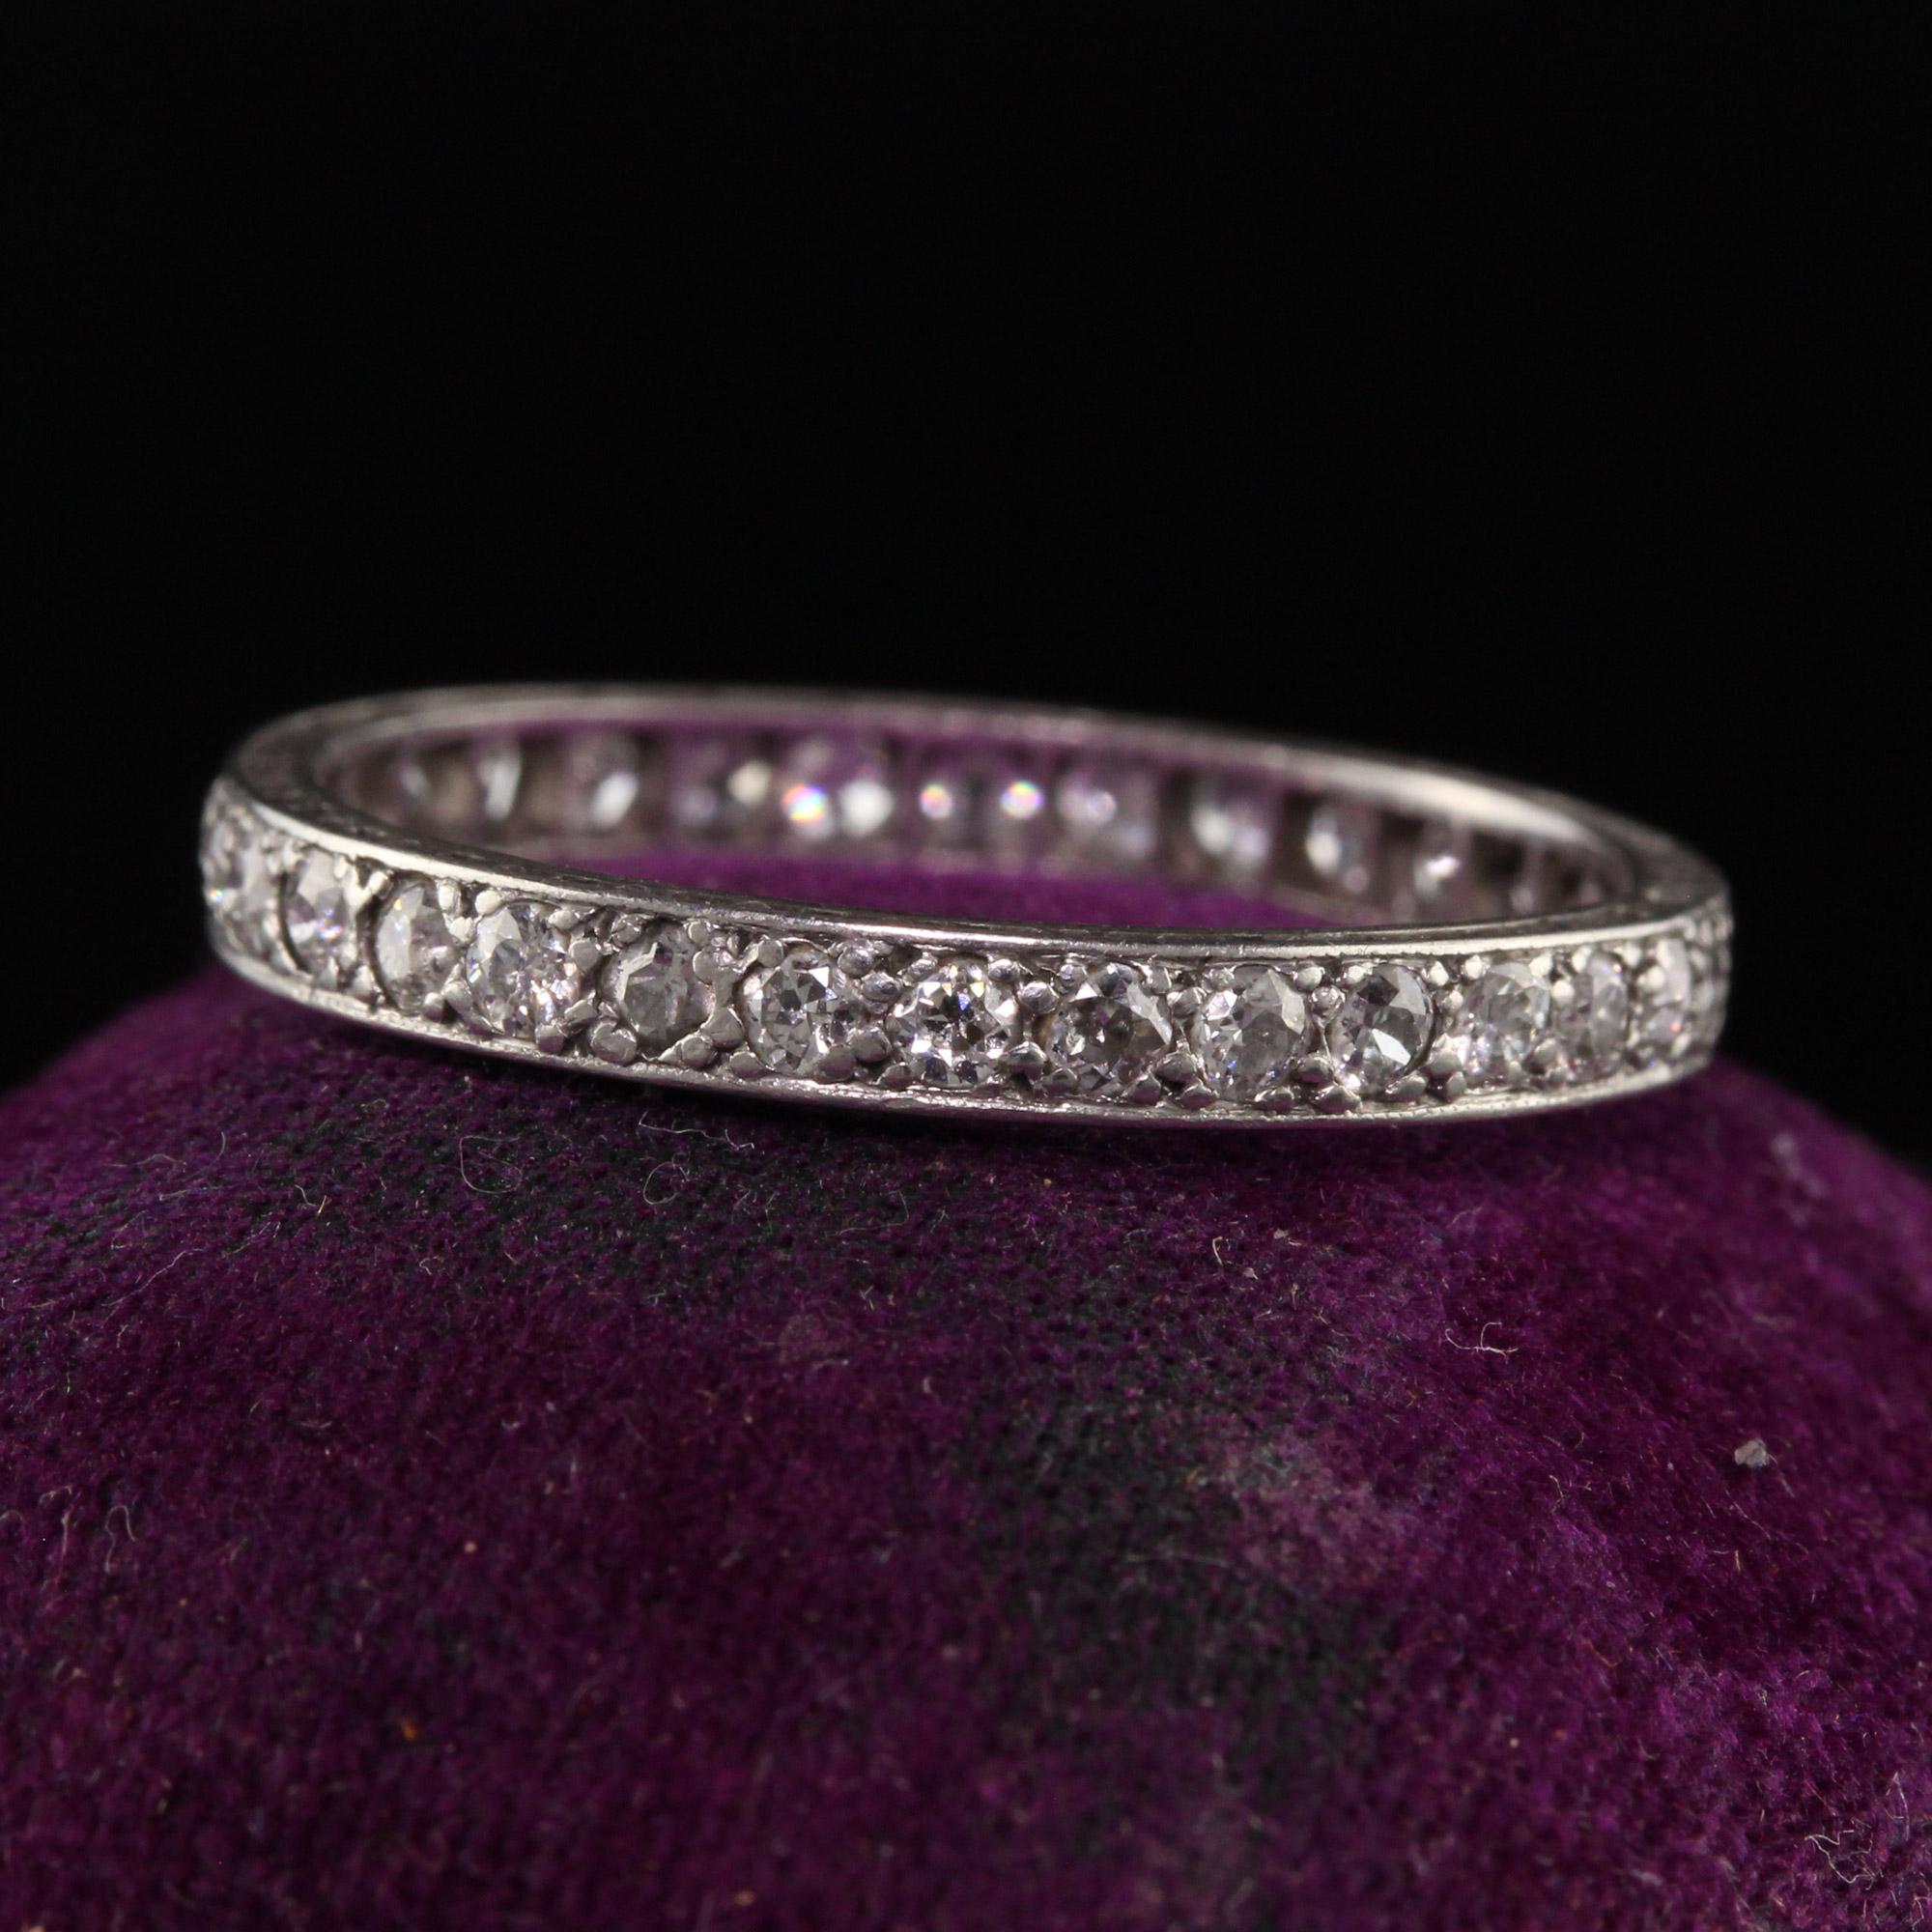 Magnifique anneau d'éternité en platine Art déco européen filigrane avec diamants. Cette magnifique bague d'éternité est fabriquée en platine et comporte des diamants de taille européenne ancienne tout autour de l'anneau.

Article #R1187

Métal :